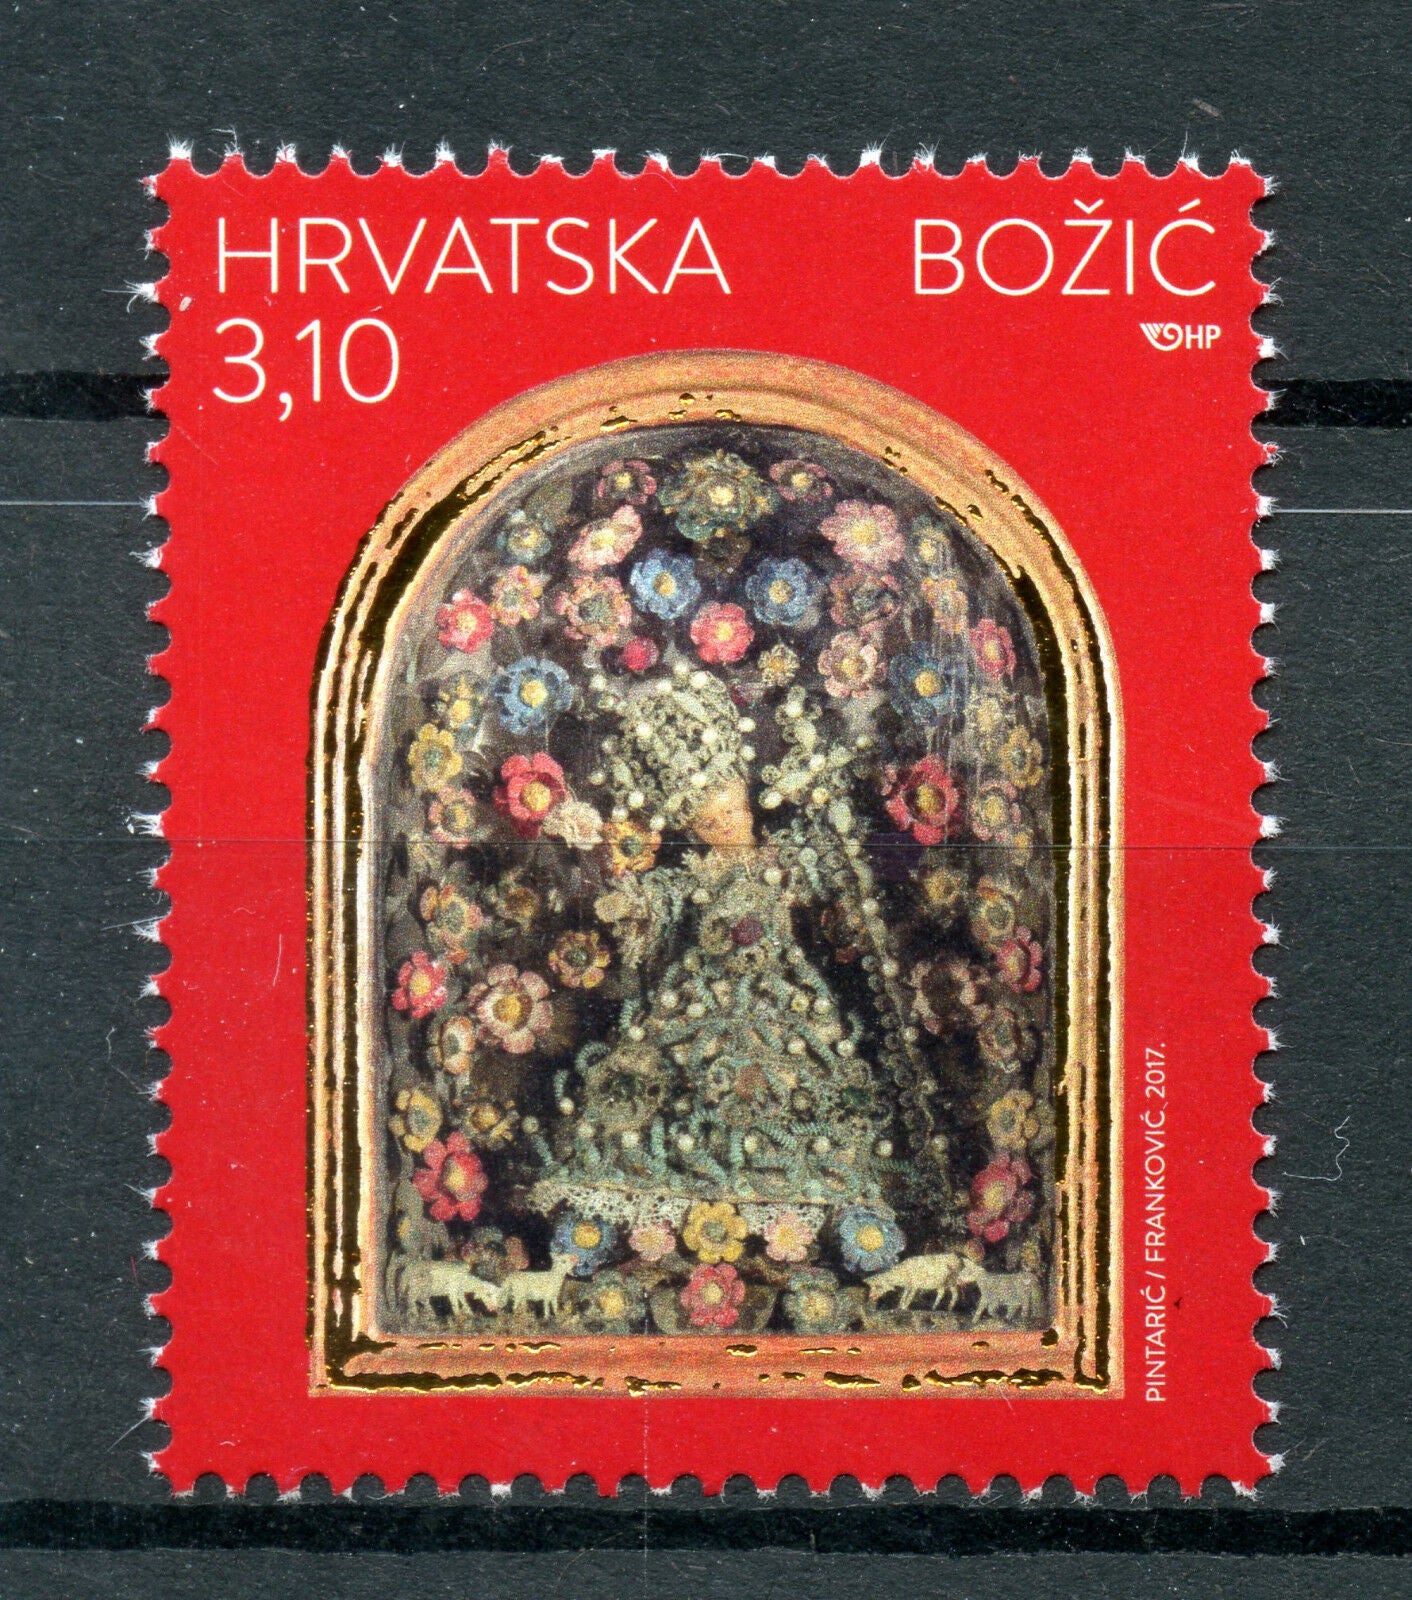 Croatia 2017 MNH Christmas 1v Set Seasonal Stamps